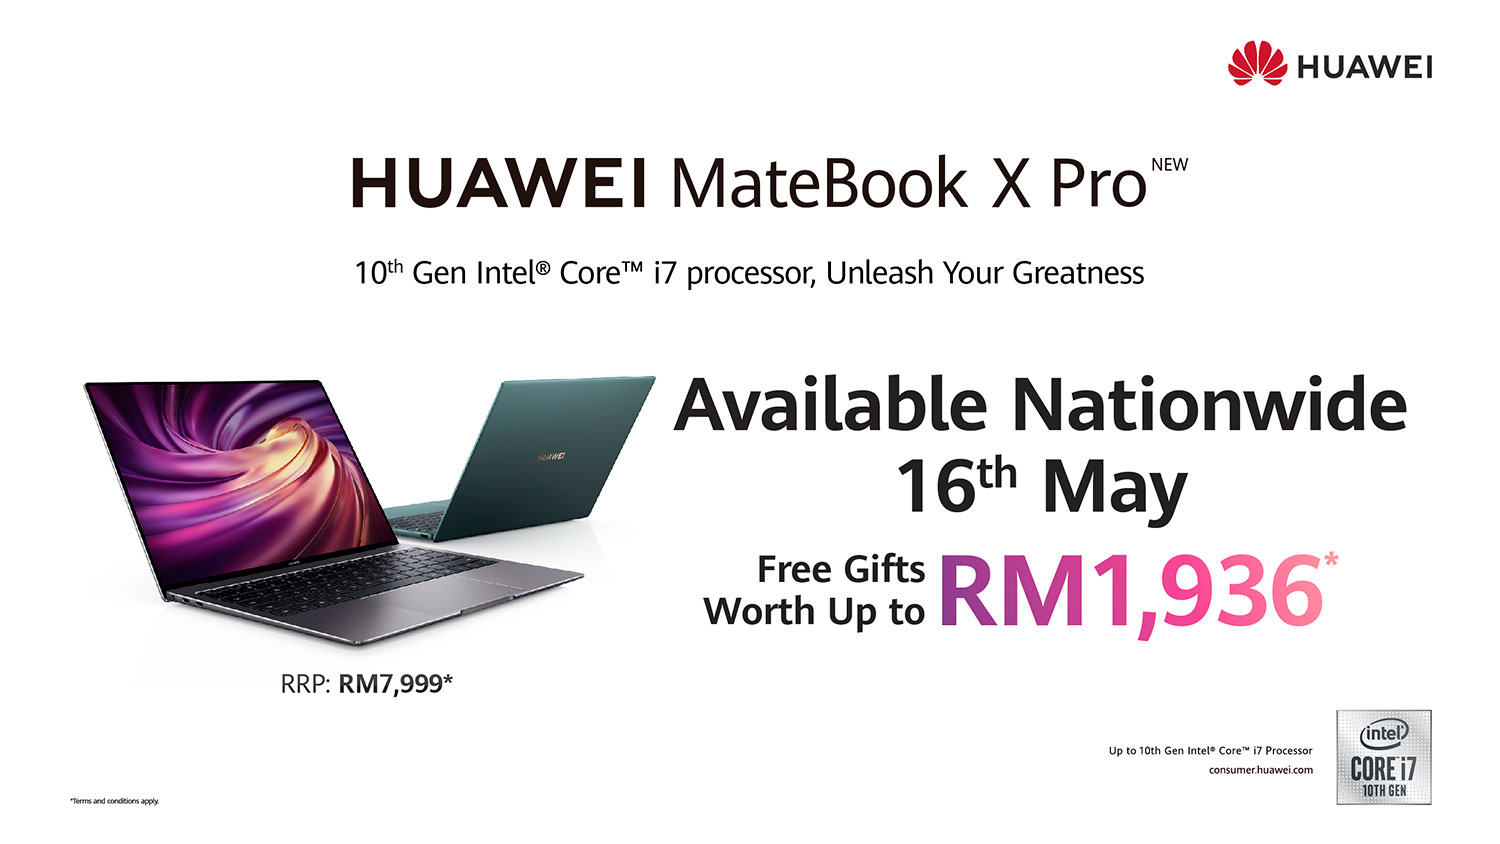 HUAWEI MateBook X Pro 2020 Price